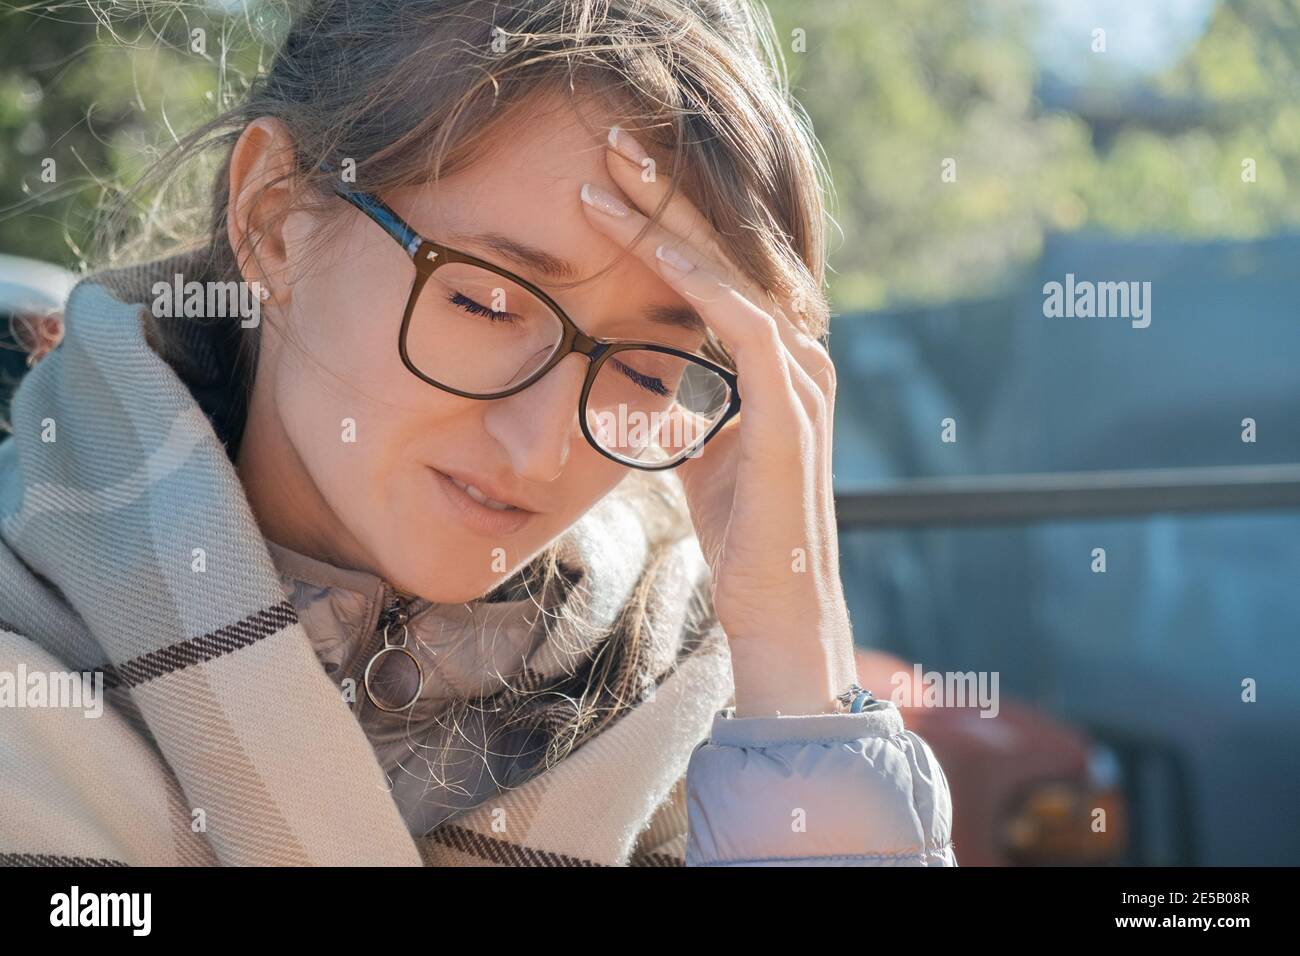 Dolor de cabeza, migraña, hipertensión. Mujer adulta joven en vasos sosteniendo su cabeza mientras se sentaba al aire libre envuelto en un plaid Foto de stock